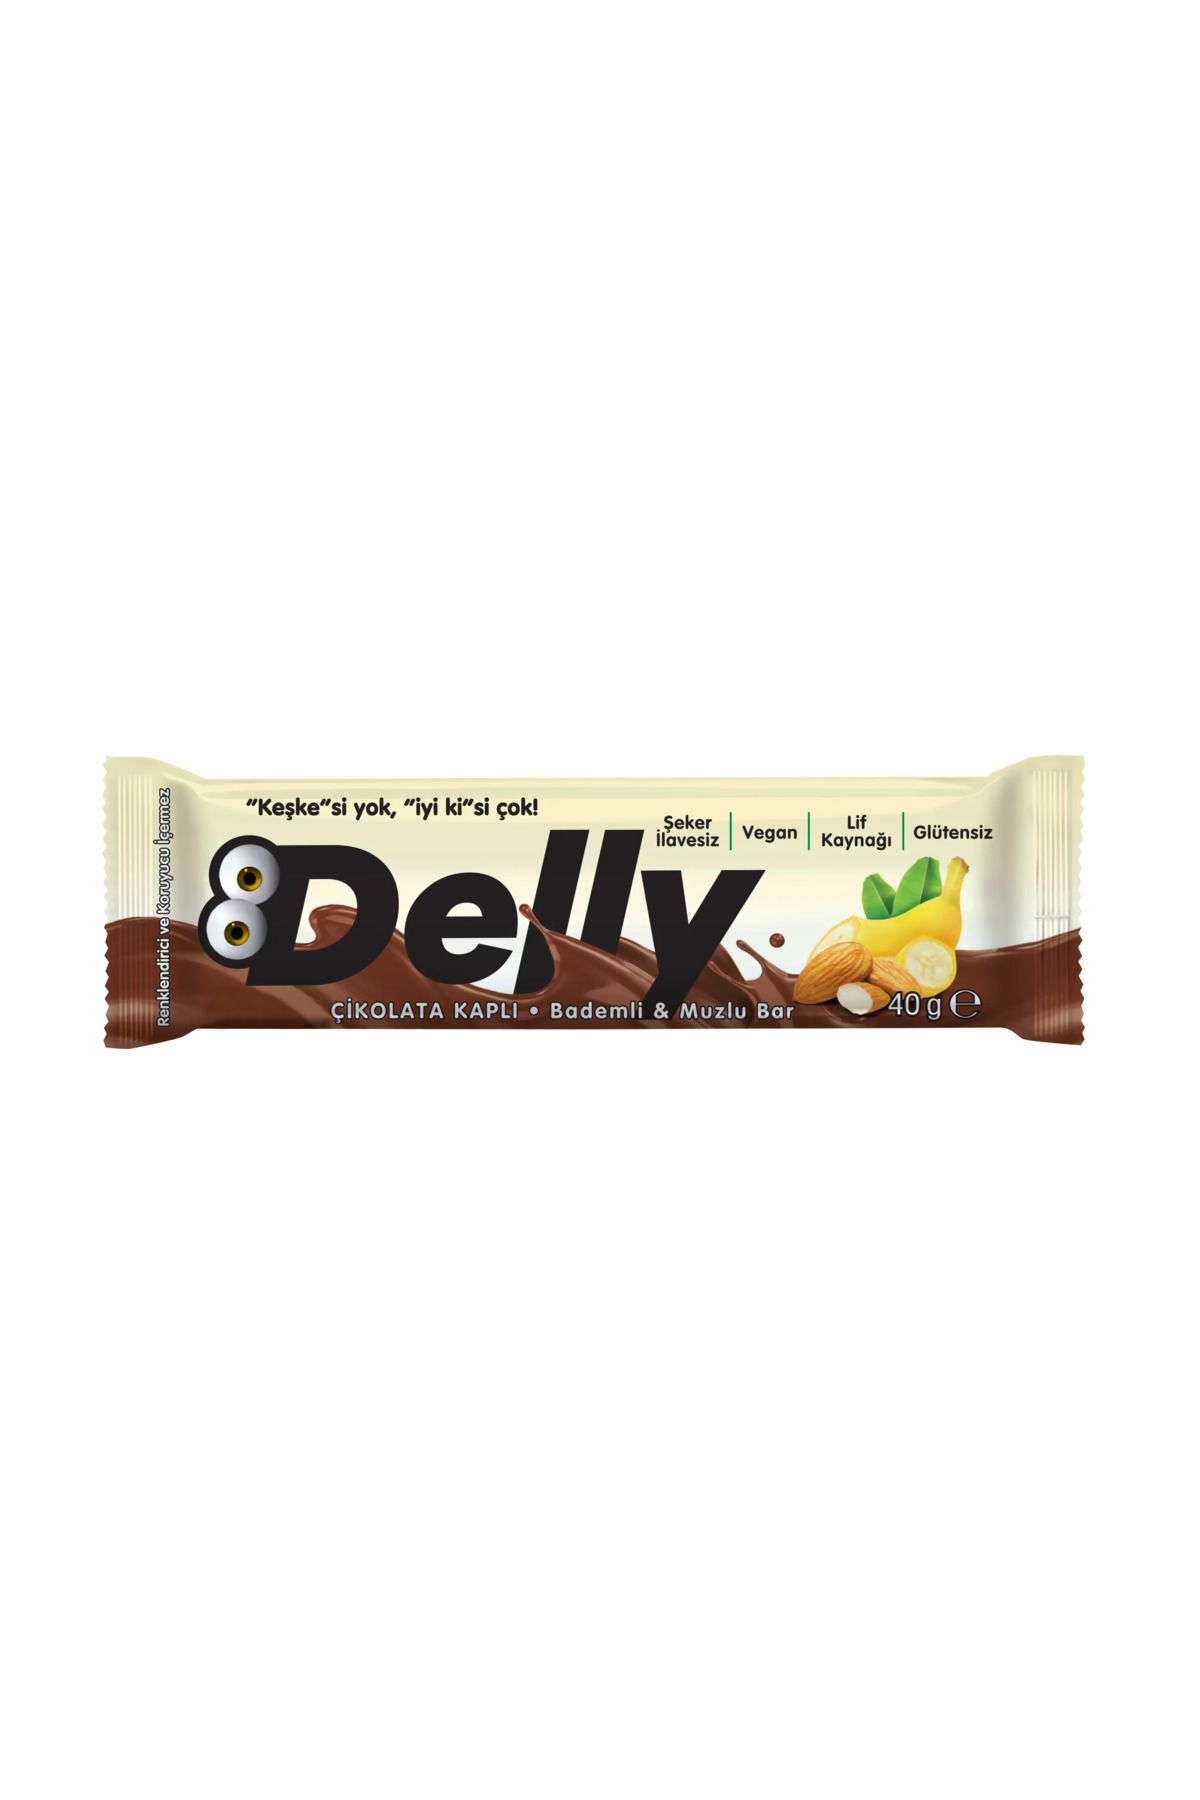 Delly Şeker Ilavesiz Çikolata Kaplı - Bademli & Muzlu Bar 40g (12ADET)